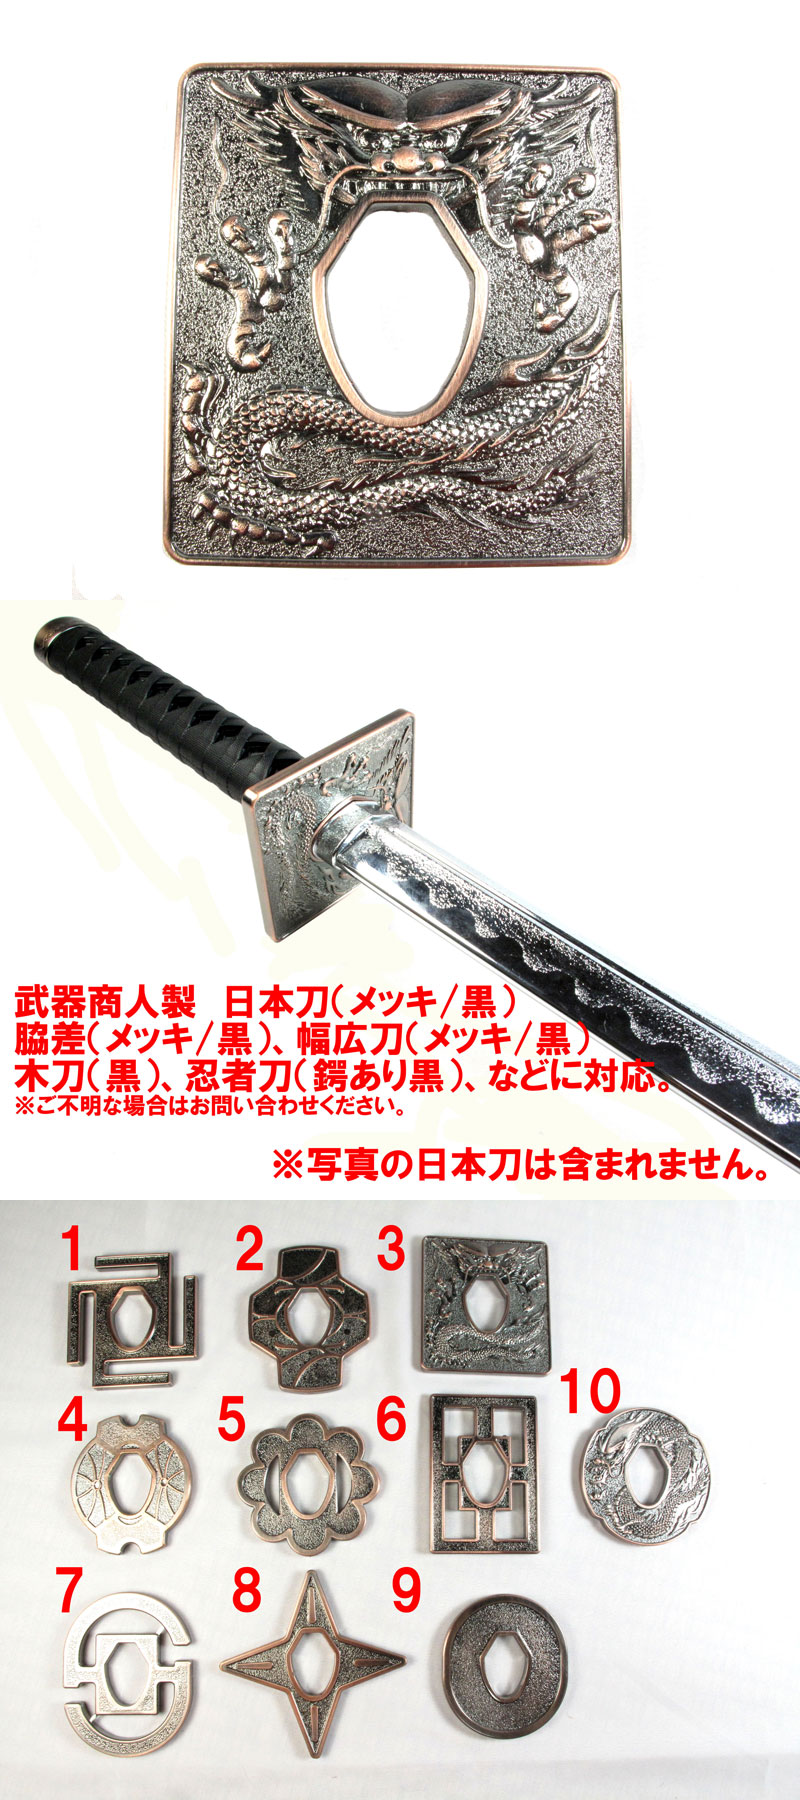 武器商人 BTBP03】日本刀オプション 鍔 TYPE-3 メッキ | 武器商人 ...